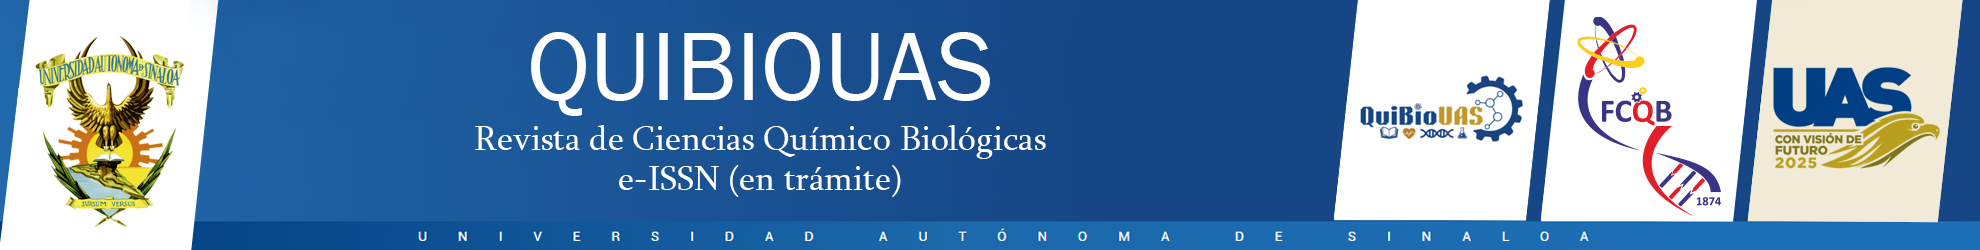 Logo QUIBIOUAS Revista de Ciencias Químico Biológicas